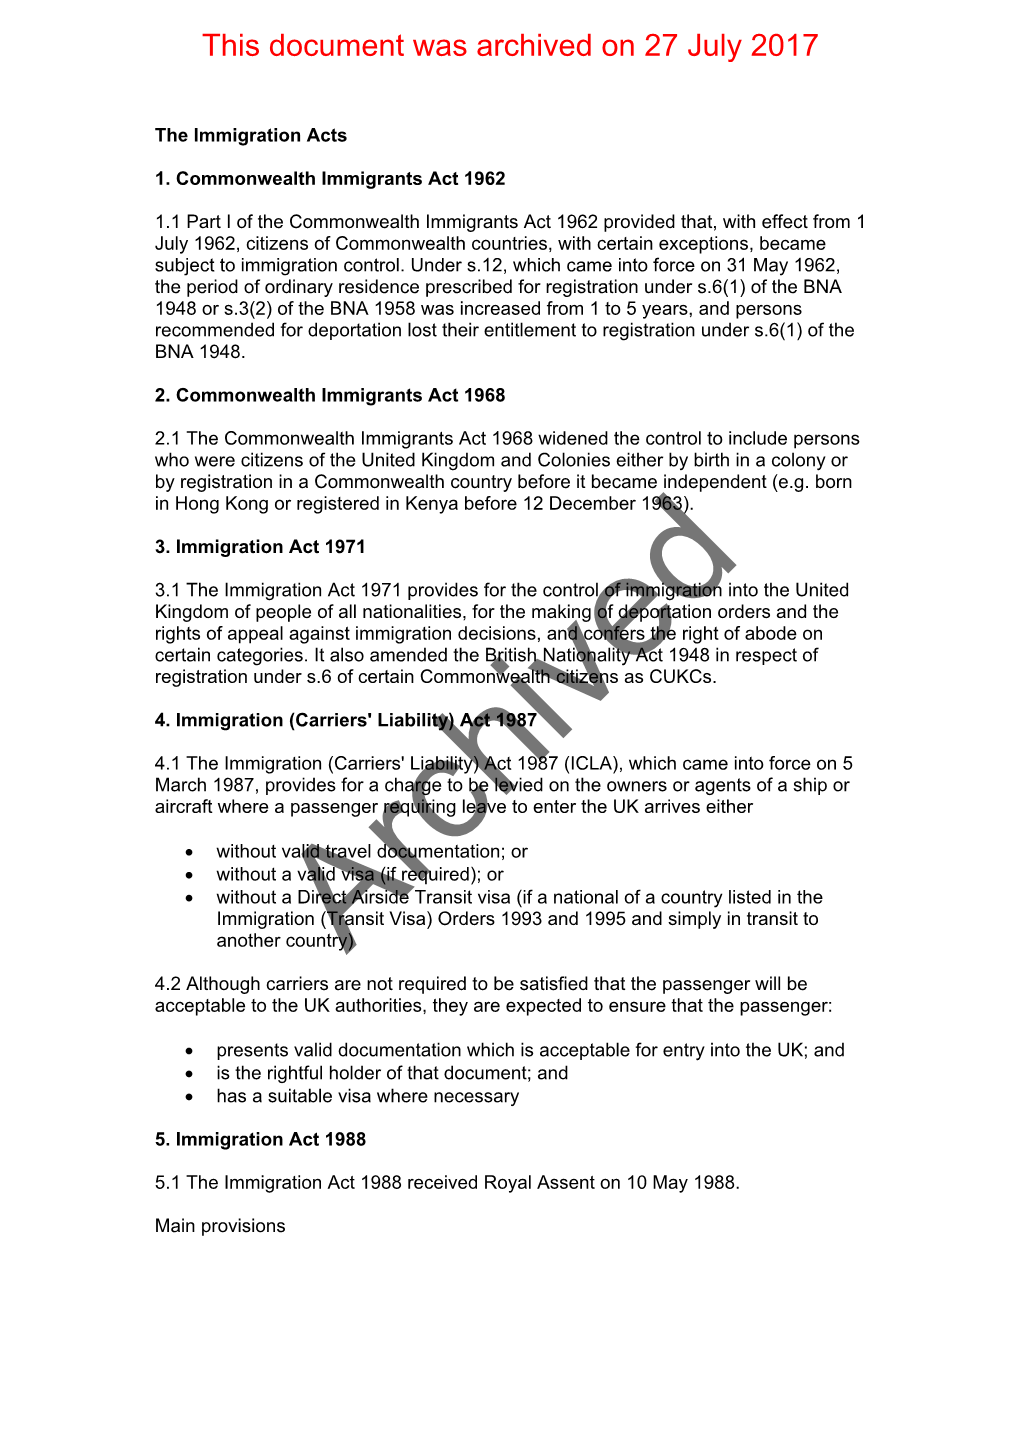 Commonwealth Immigrants Act 1962